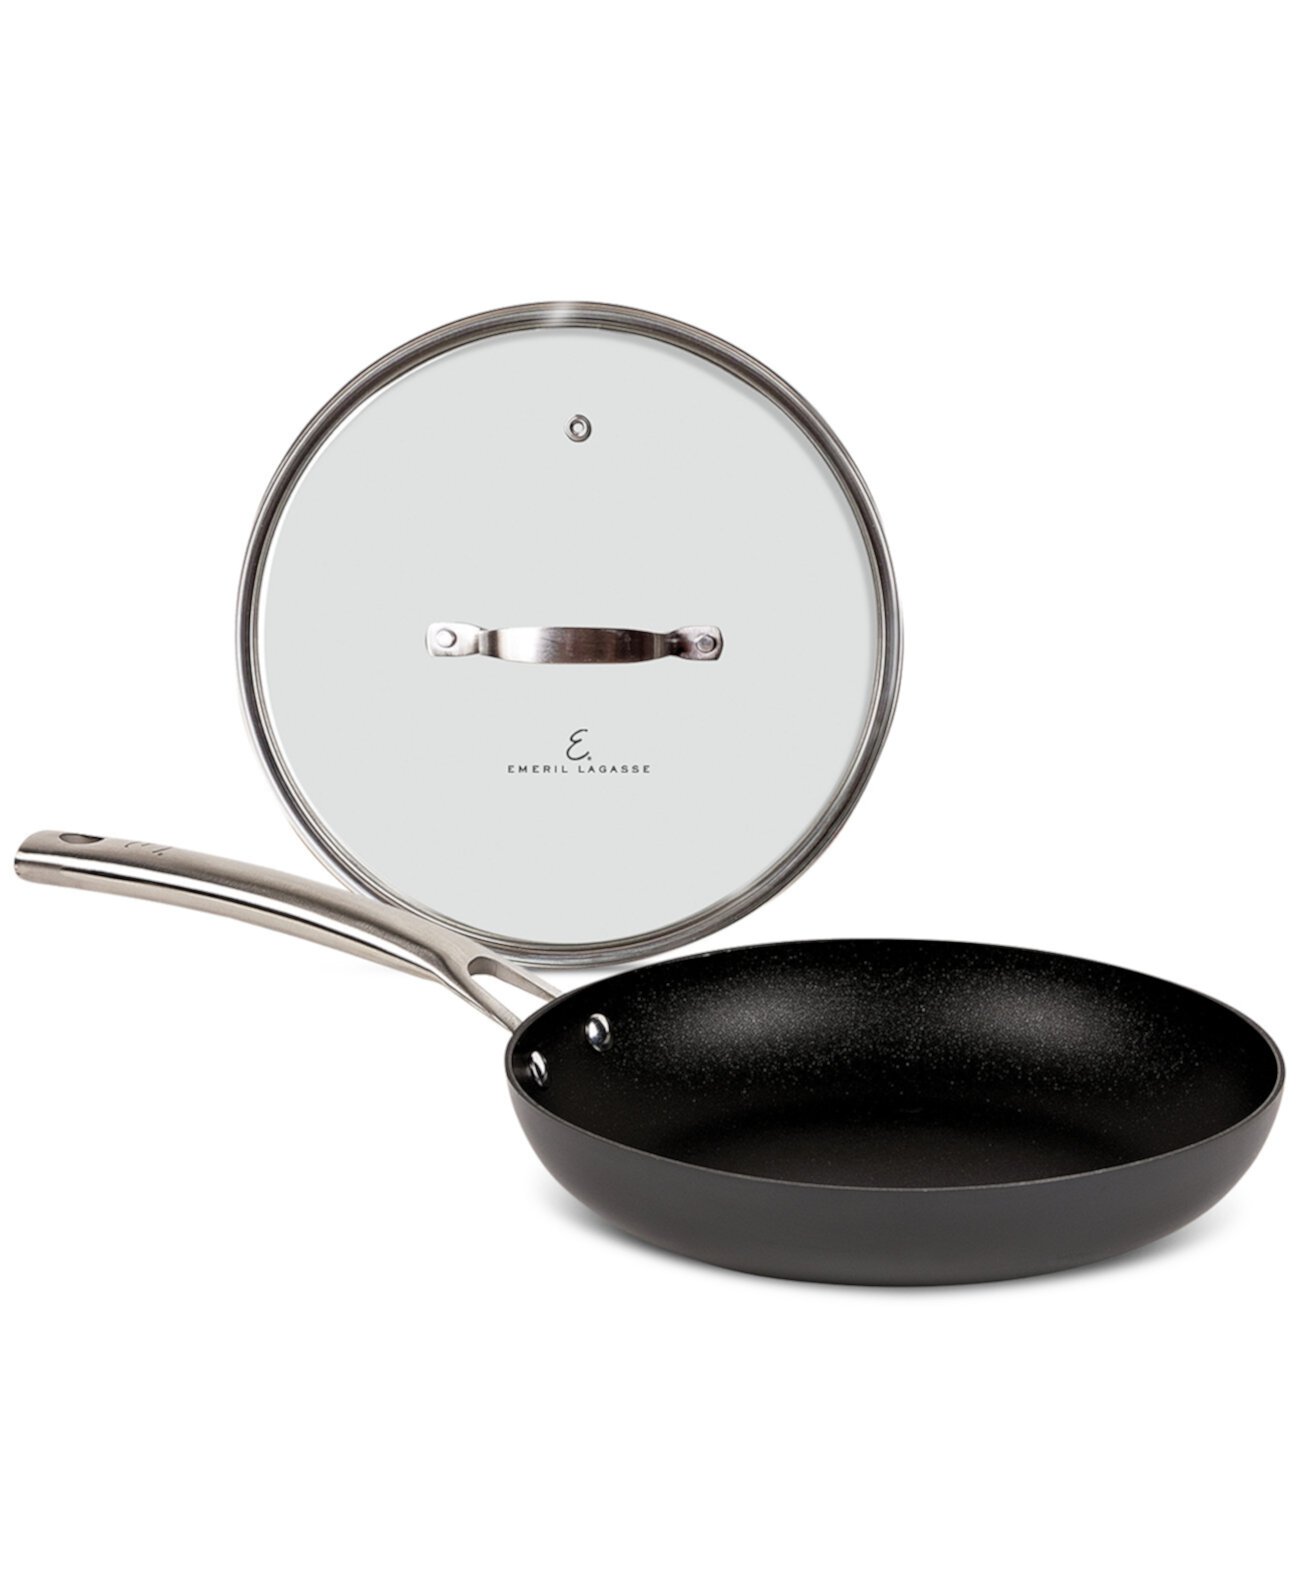 Сковорода Forever Pans Pro с твердым анодированием 12 дюймов и крышкой с антипригарным покрытием Emeril Lagasse